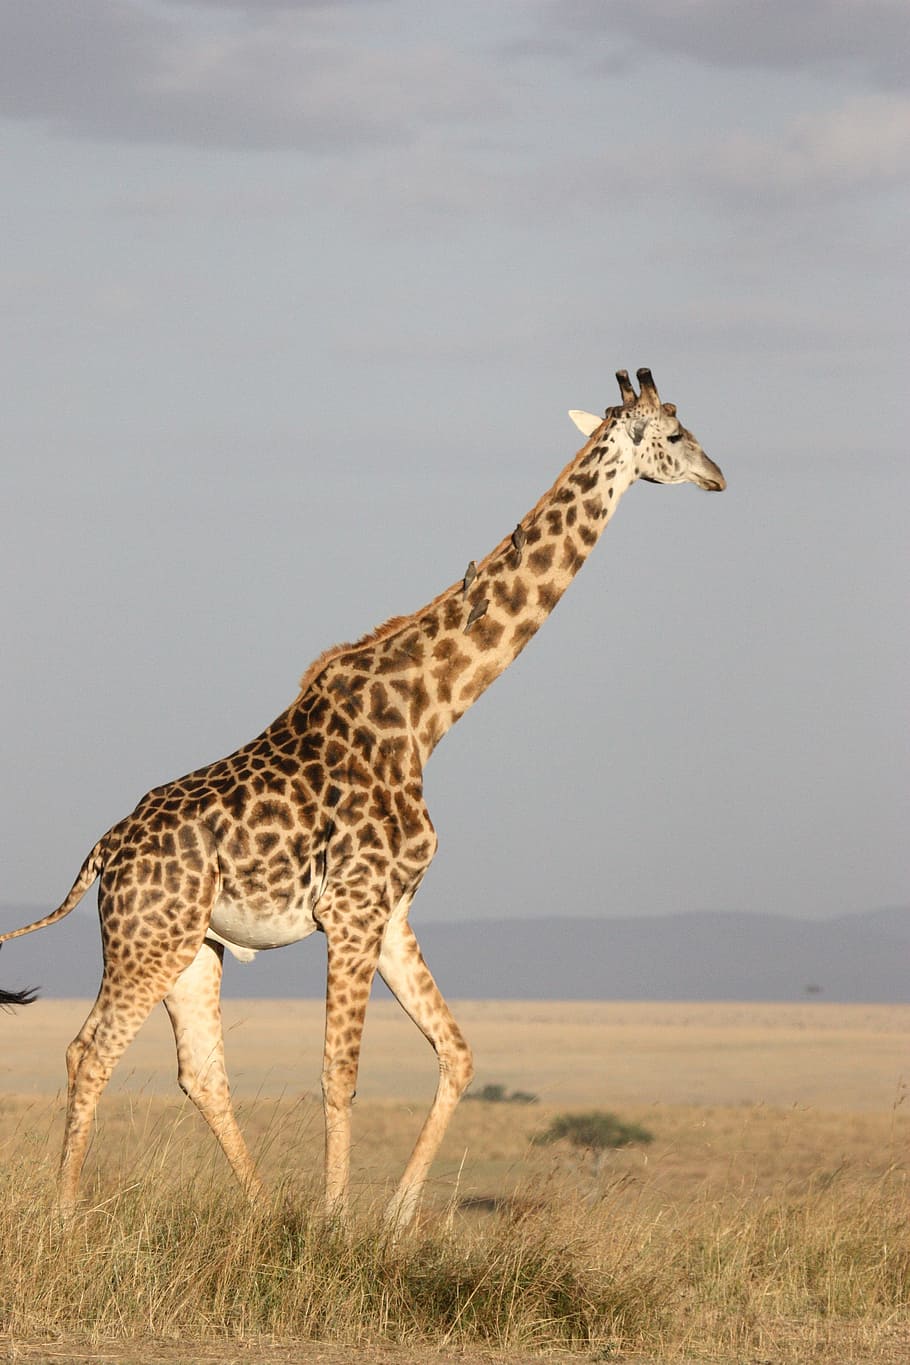 jirafa, marchito, hierba, alto, mamífero, África, Sudáfrica, salvaje, naturaleza, vida silvestre